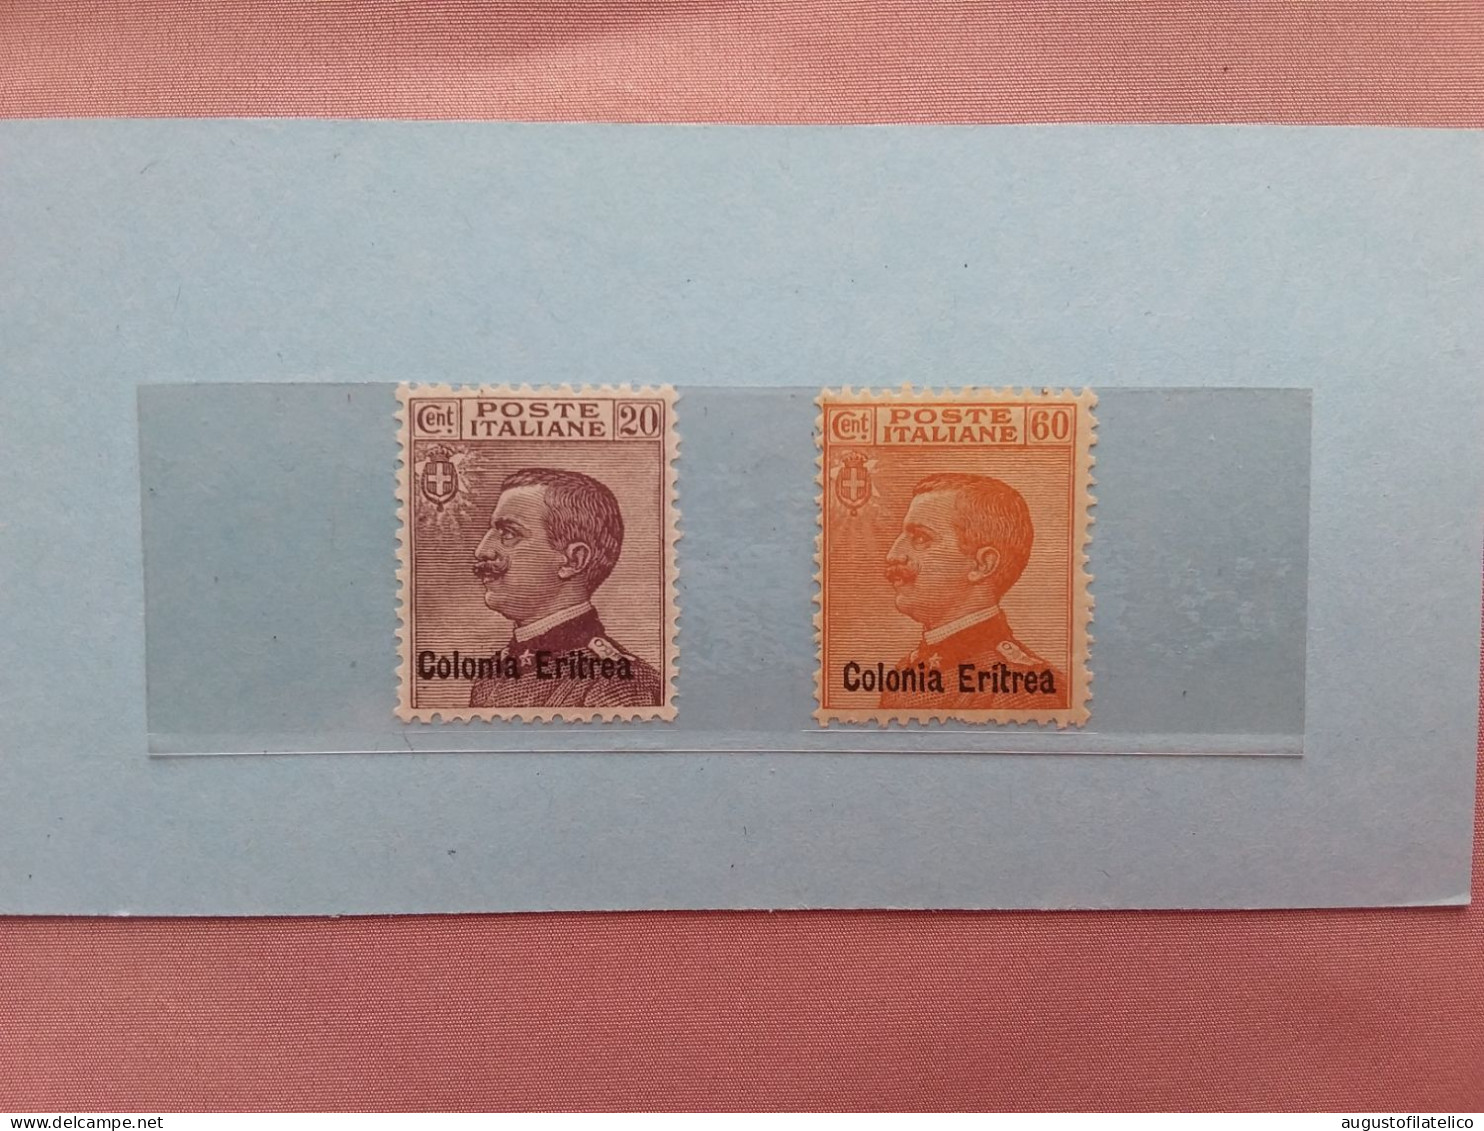 COLONIE ITALIANE 1928/29 - ERITREA - Effigie Re - Nn. 123/24 Nuovi * (invisibile T.L.) - Valore Sassone 315 Euro + Spese - Eritrea